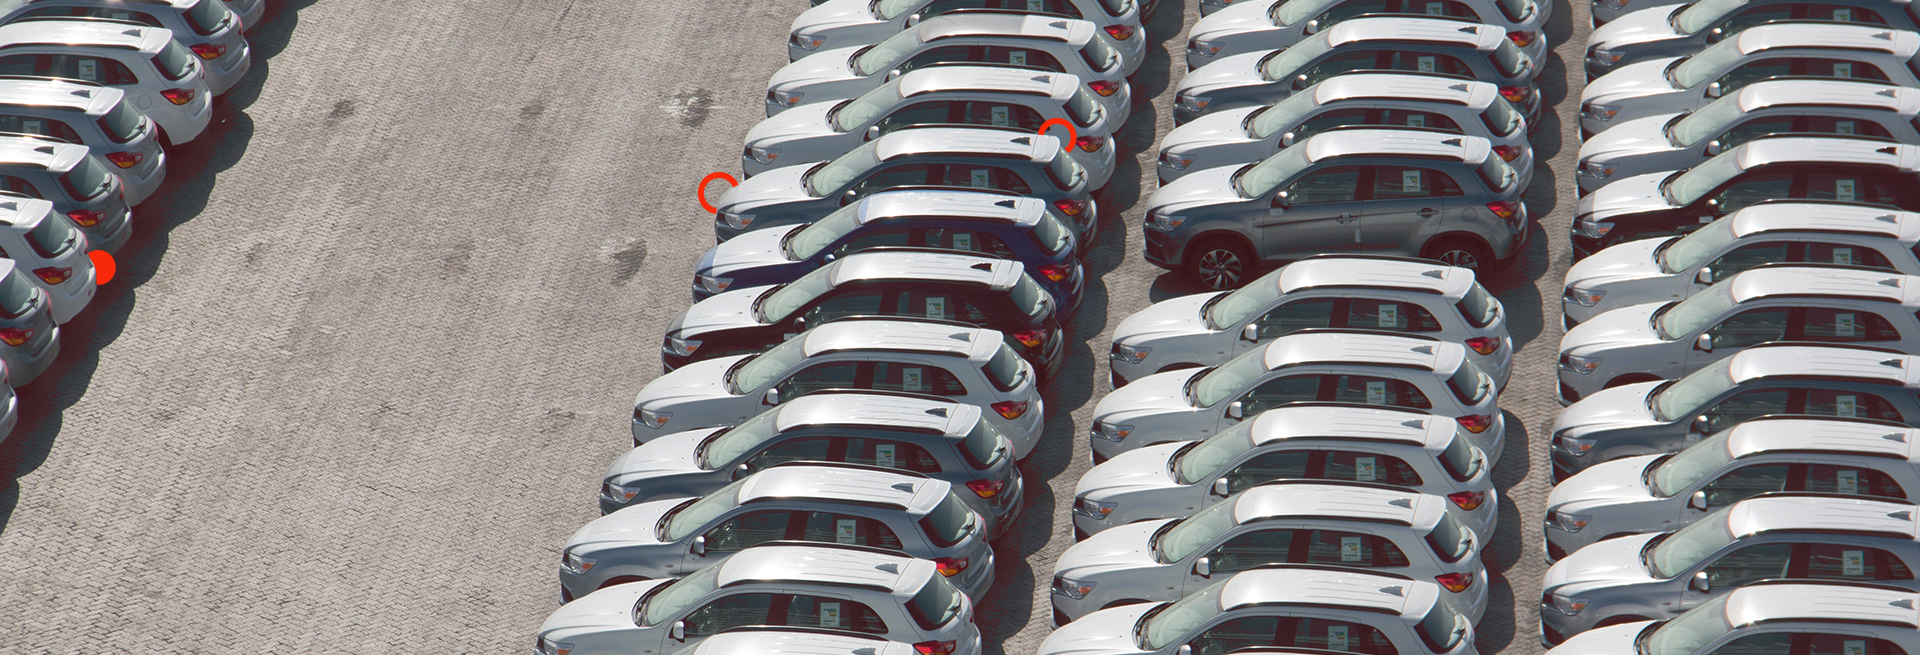 Depois de uma forte recessão, a indústria automotiva ainda caminha mais lenta. Conheça quais são seus desafios em nosso blog.